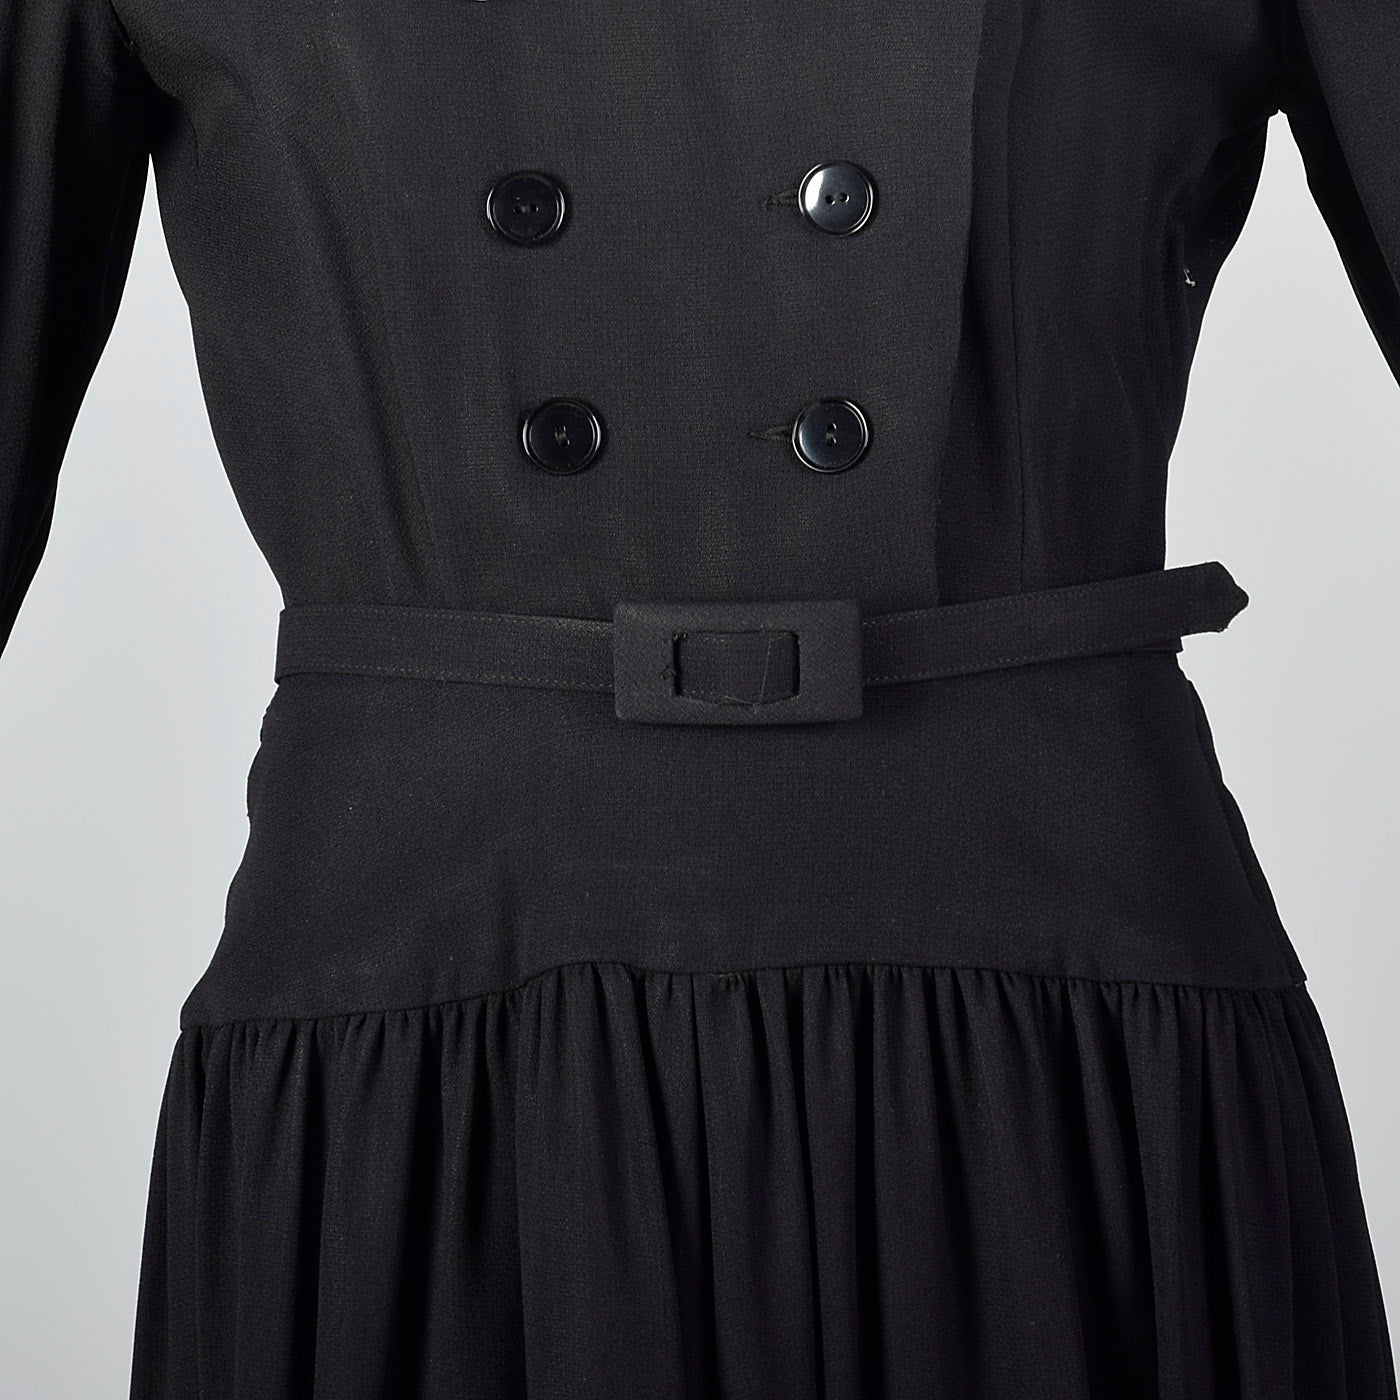 Small 1950s Black Drop Waist Dress